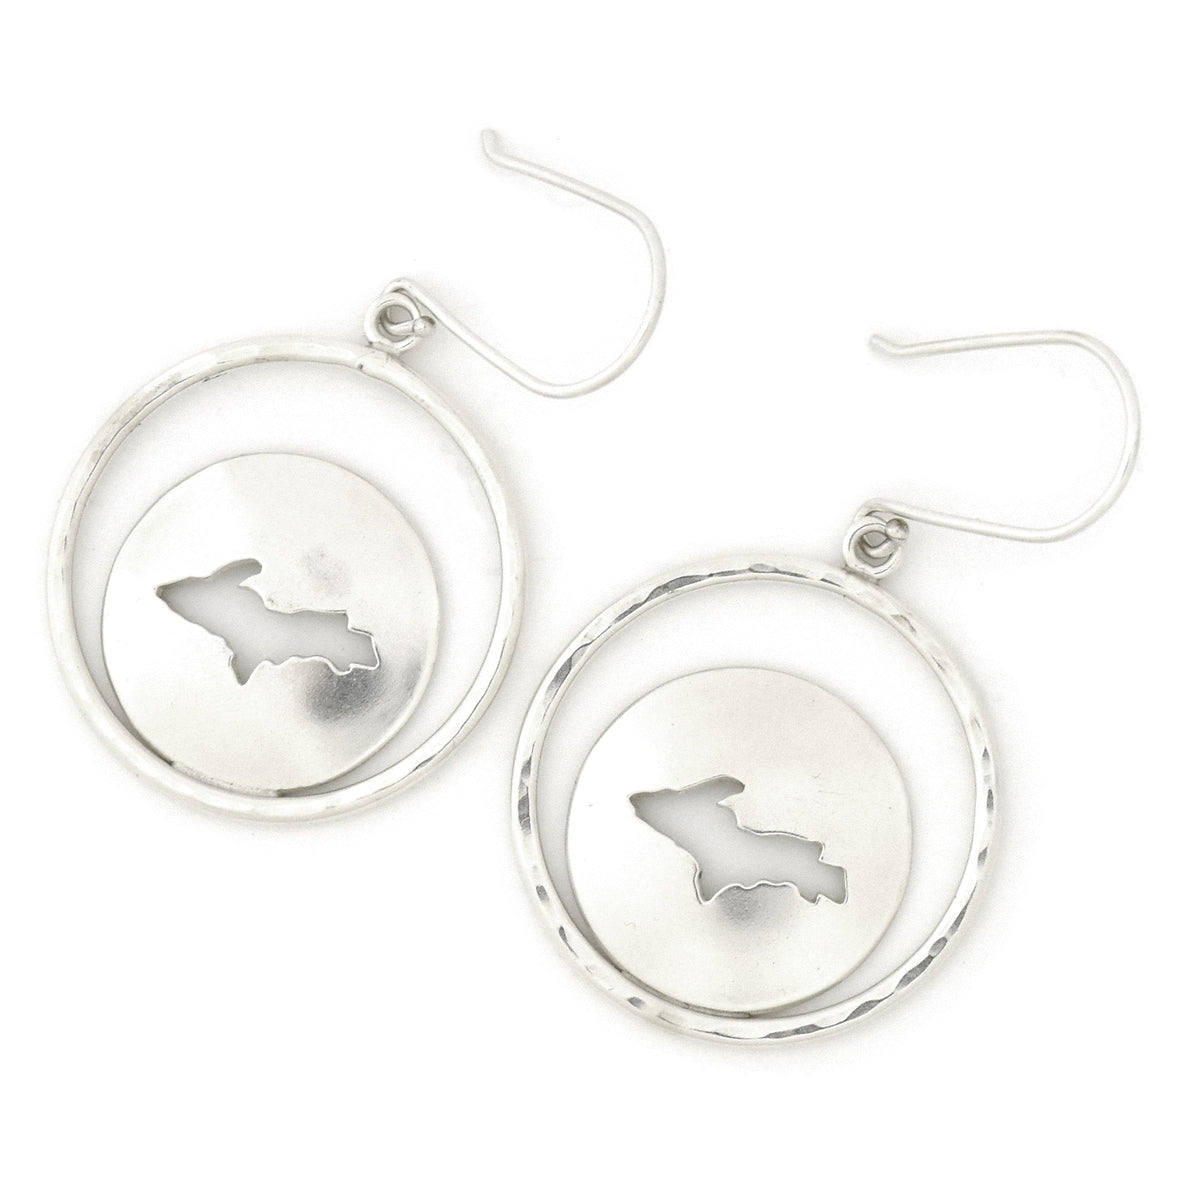 Upper Michigan Statement Earrings - Silver Earrings   7094 - handmade by Beth Millner Jewelry